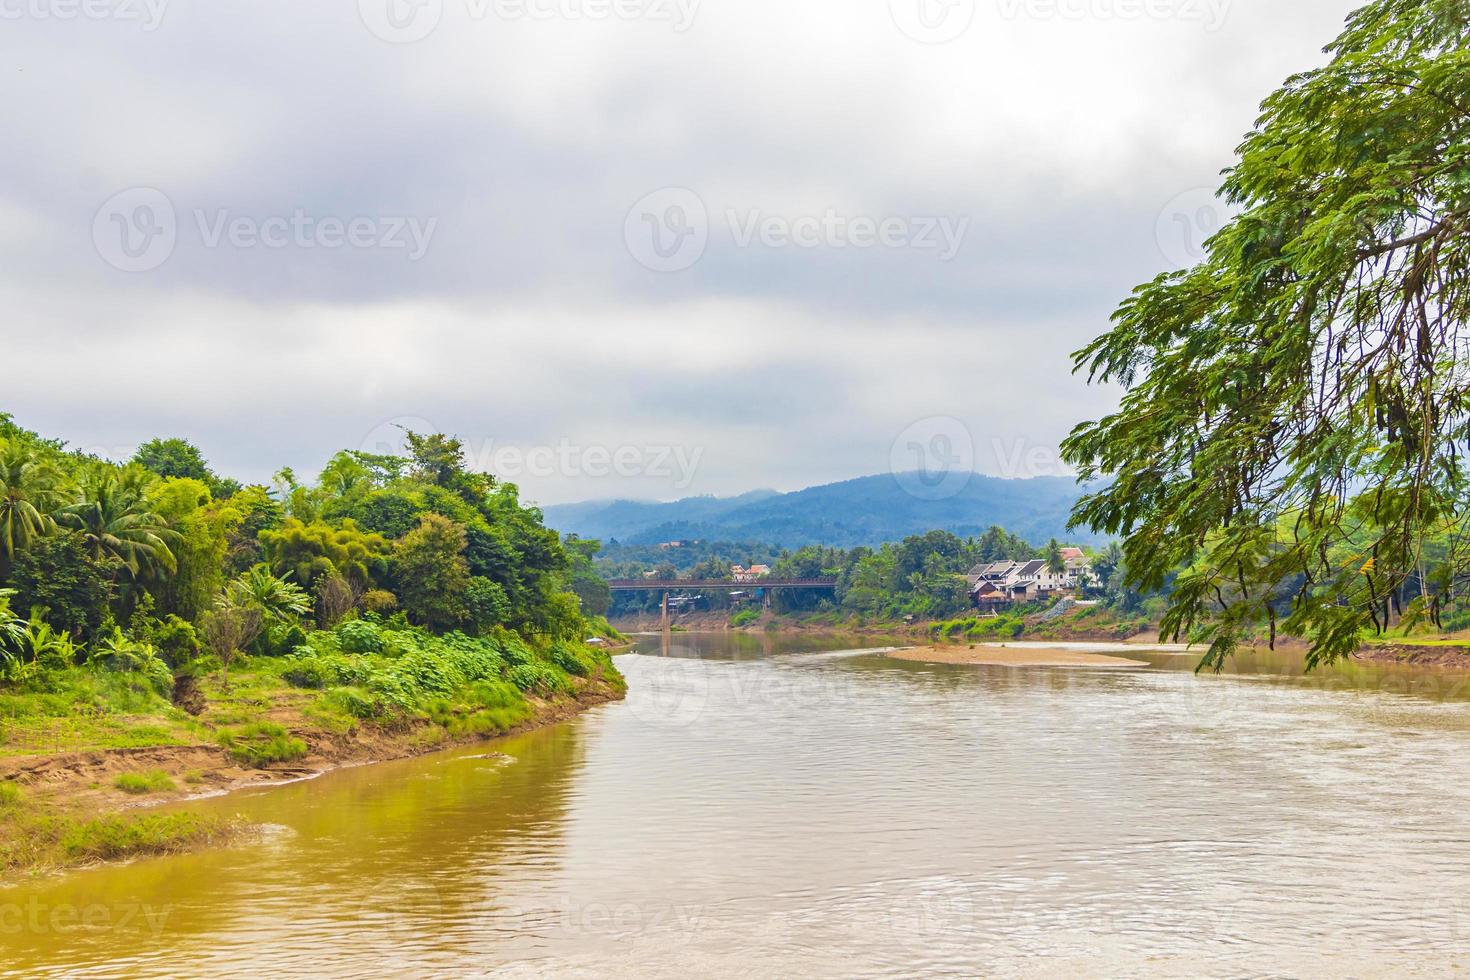 città di luang prabang in laos panorama del paesaggio con il fiume mekong. foto